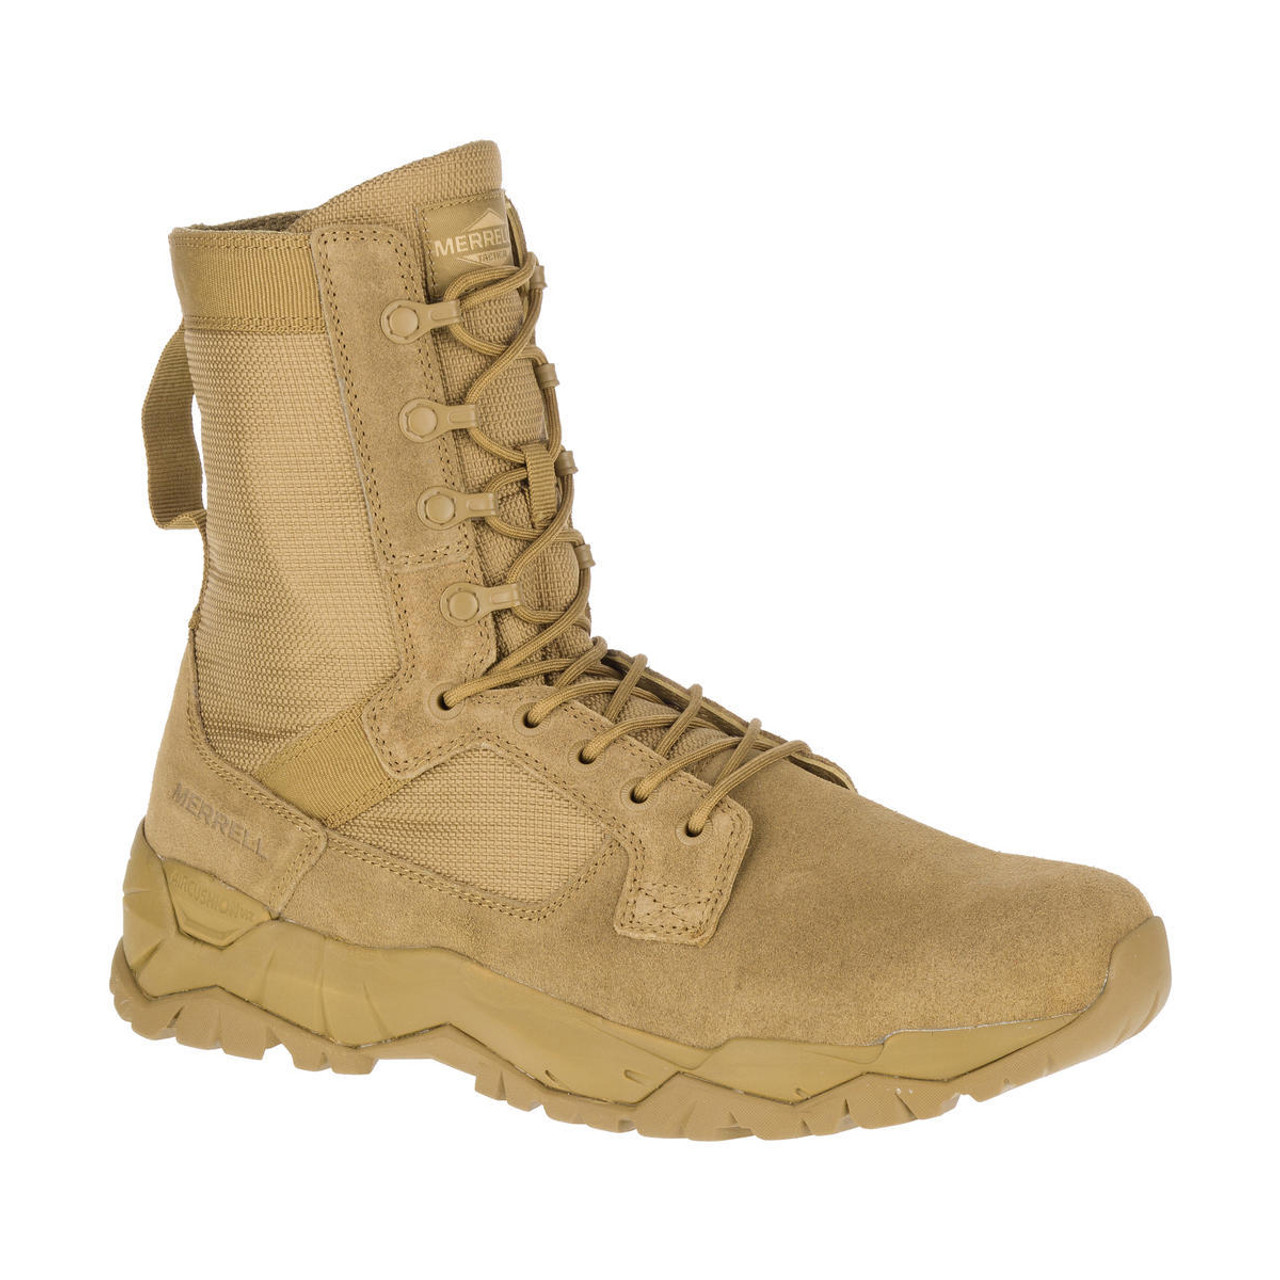 merrell lightweight boots